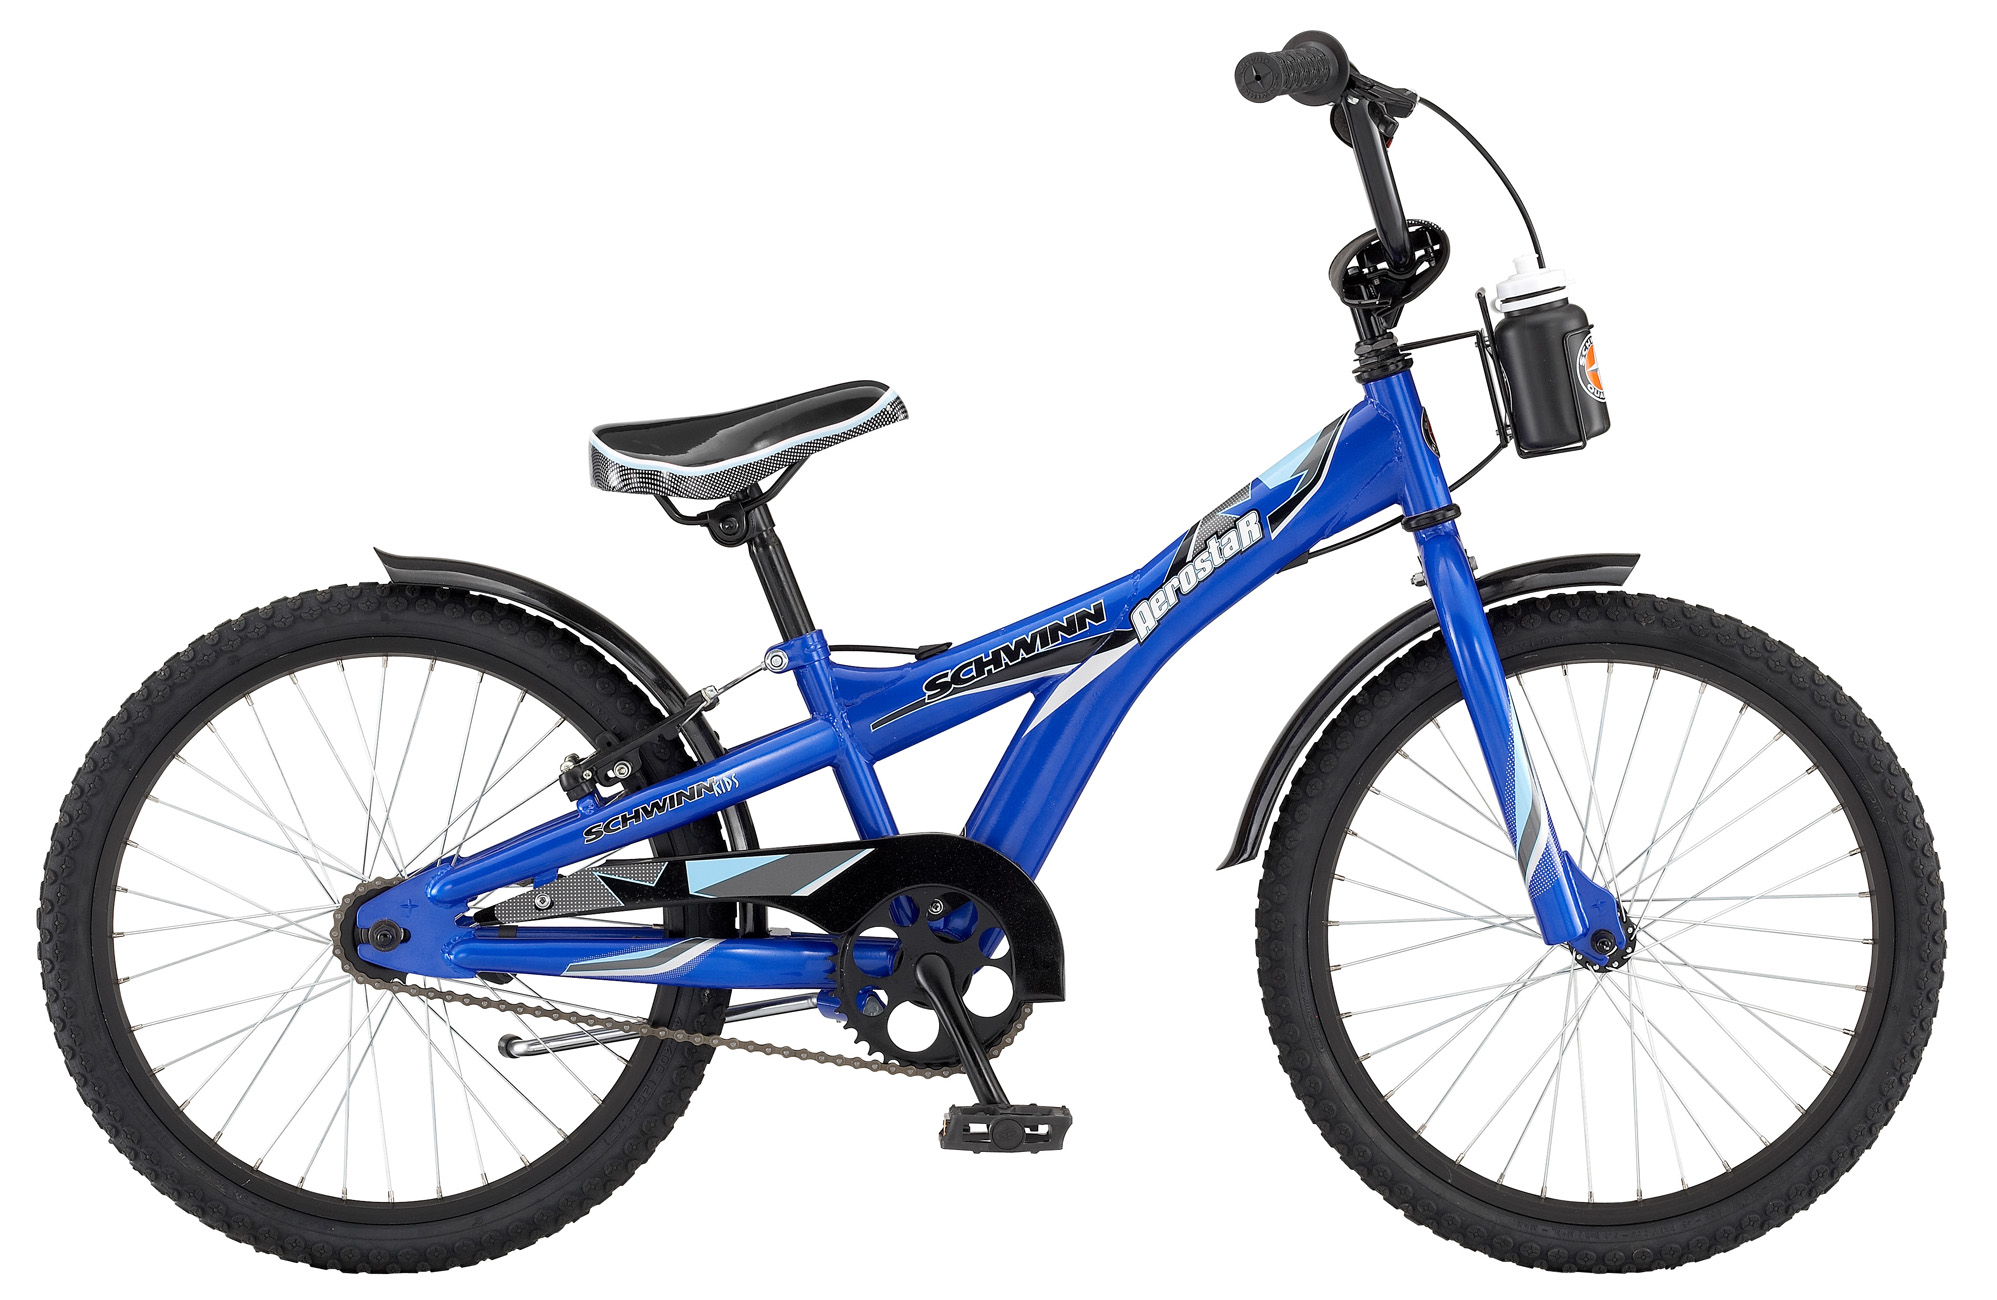 Купить подростковый велосипед для мальчика 10 лет. Велосипед Schwinn Aerostar. Велосипед Schwinn 20. Велосипед детский Schwinn 20'. Подростковый горный (MTB) велосипед Schwinn Aerostar (2009).